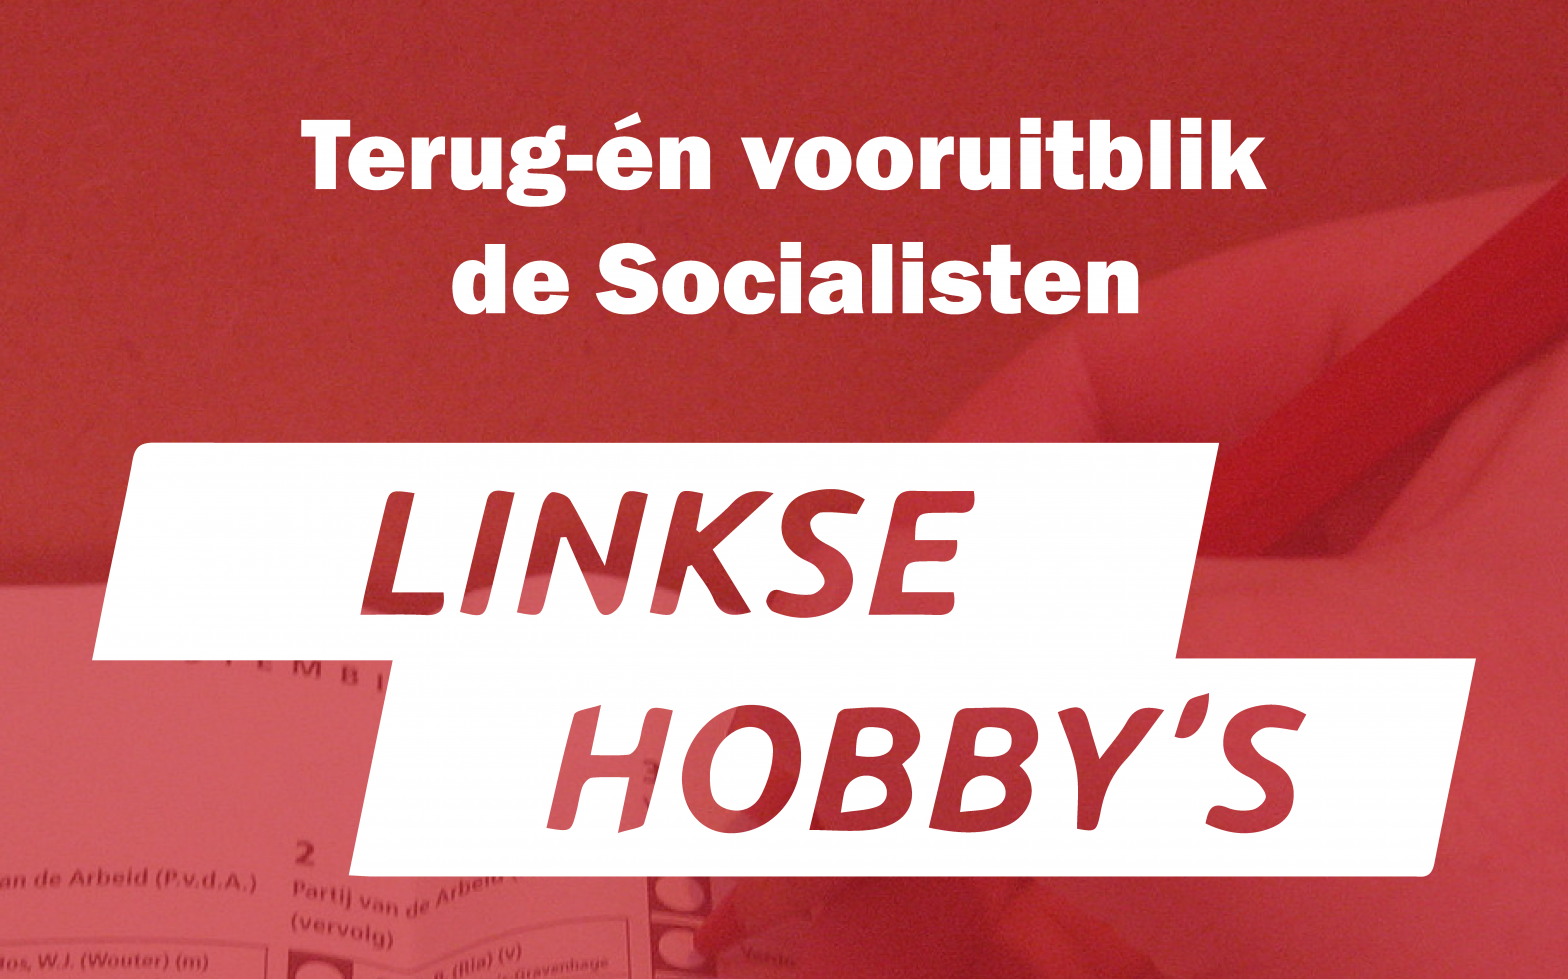 Terug- én vooruitblik de Socialisten – Linkse hobby’s